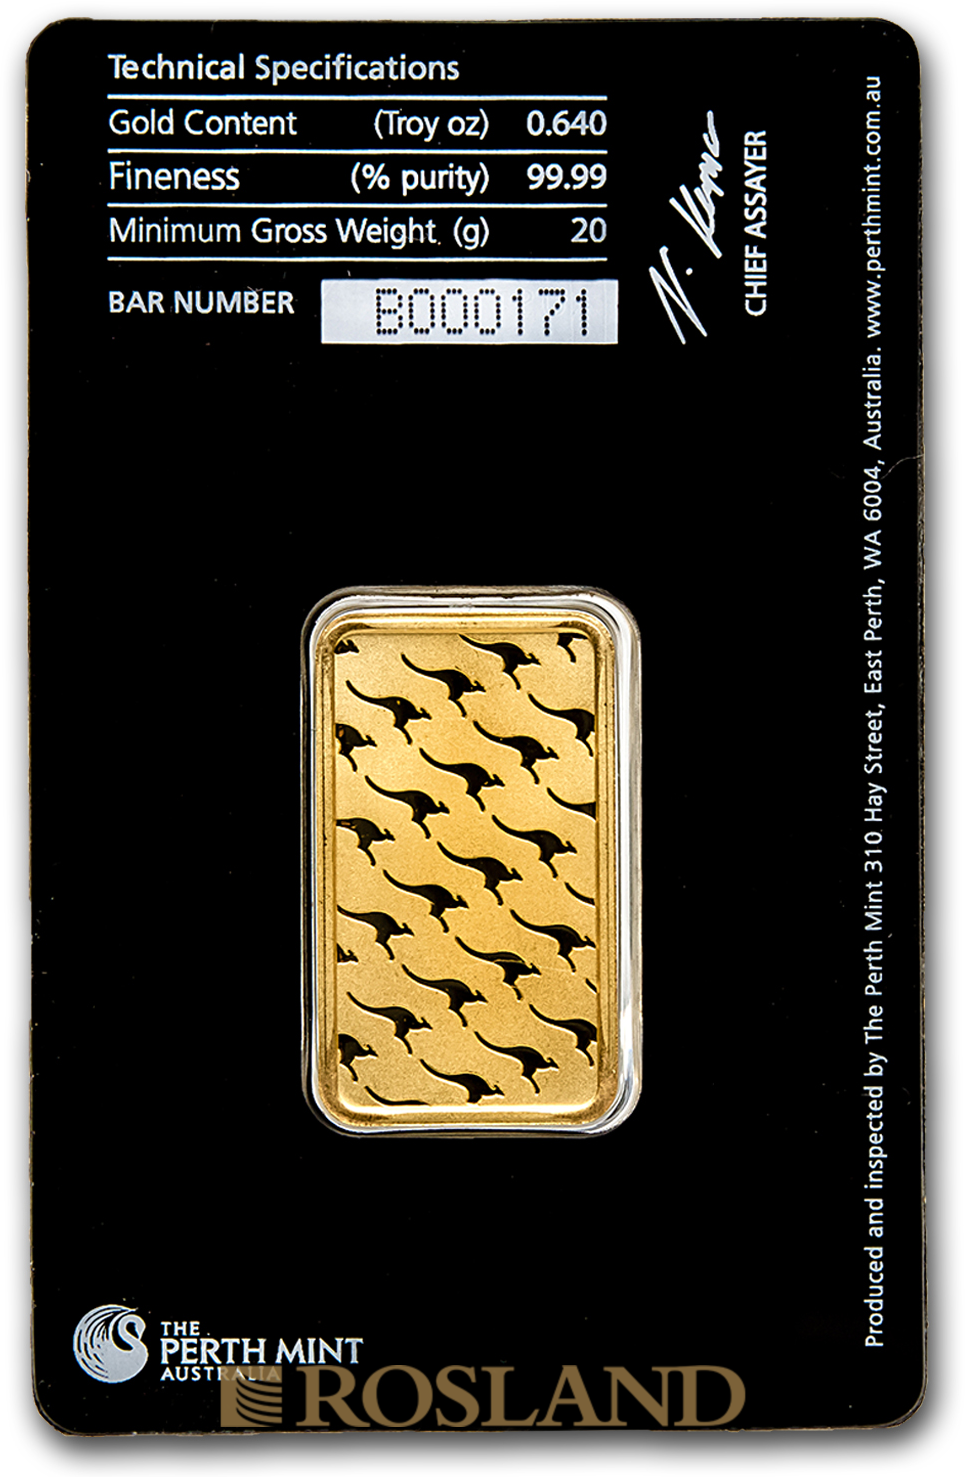 20 Gramm Goldbarren Perth Mint